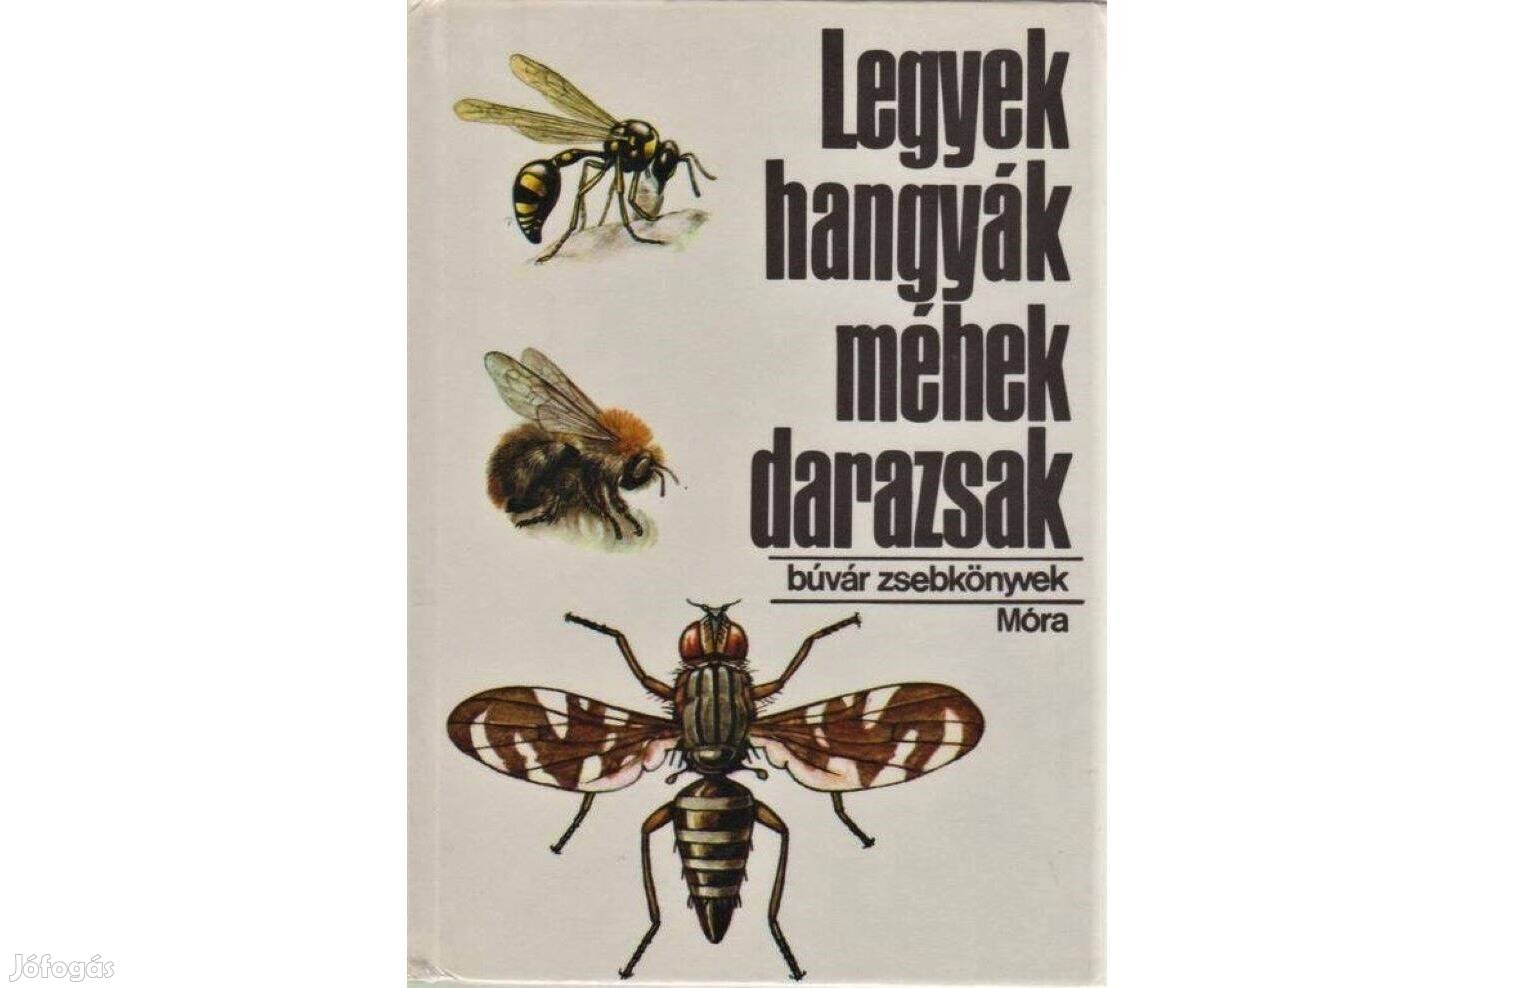 Legyek, hangyák, méhek, darazsak (Búvár Zsebkönyvek)